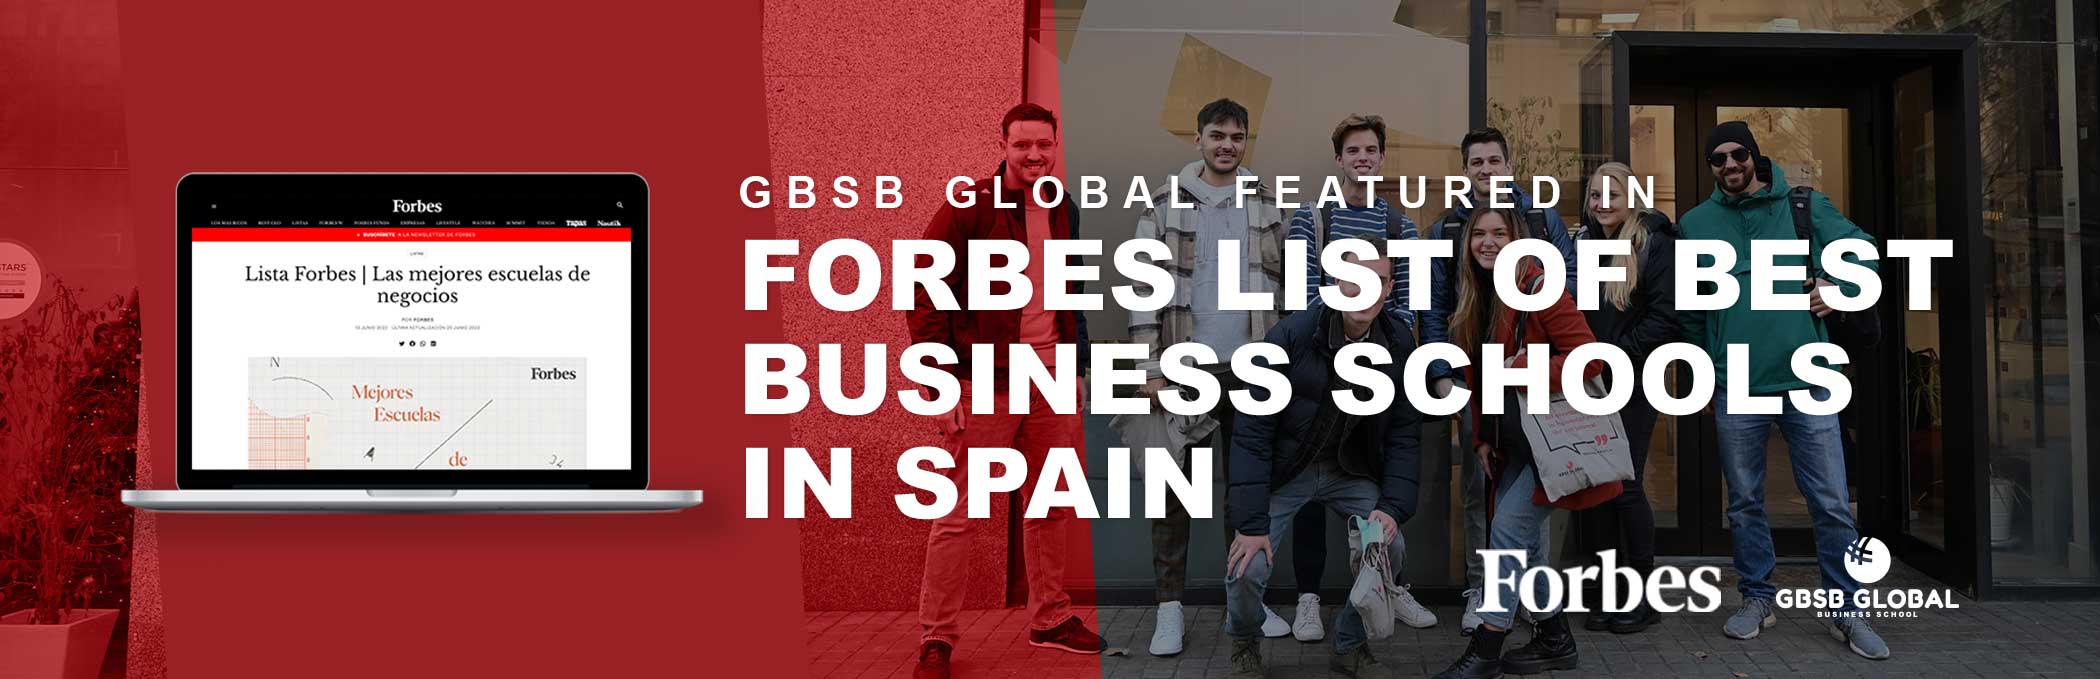 GBSB Global Business School Rankings Forbes